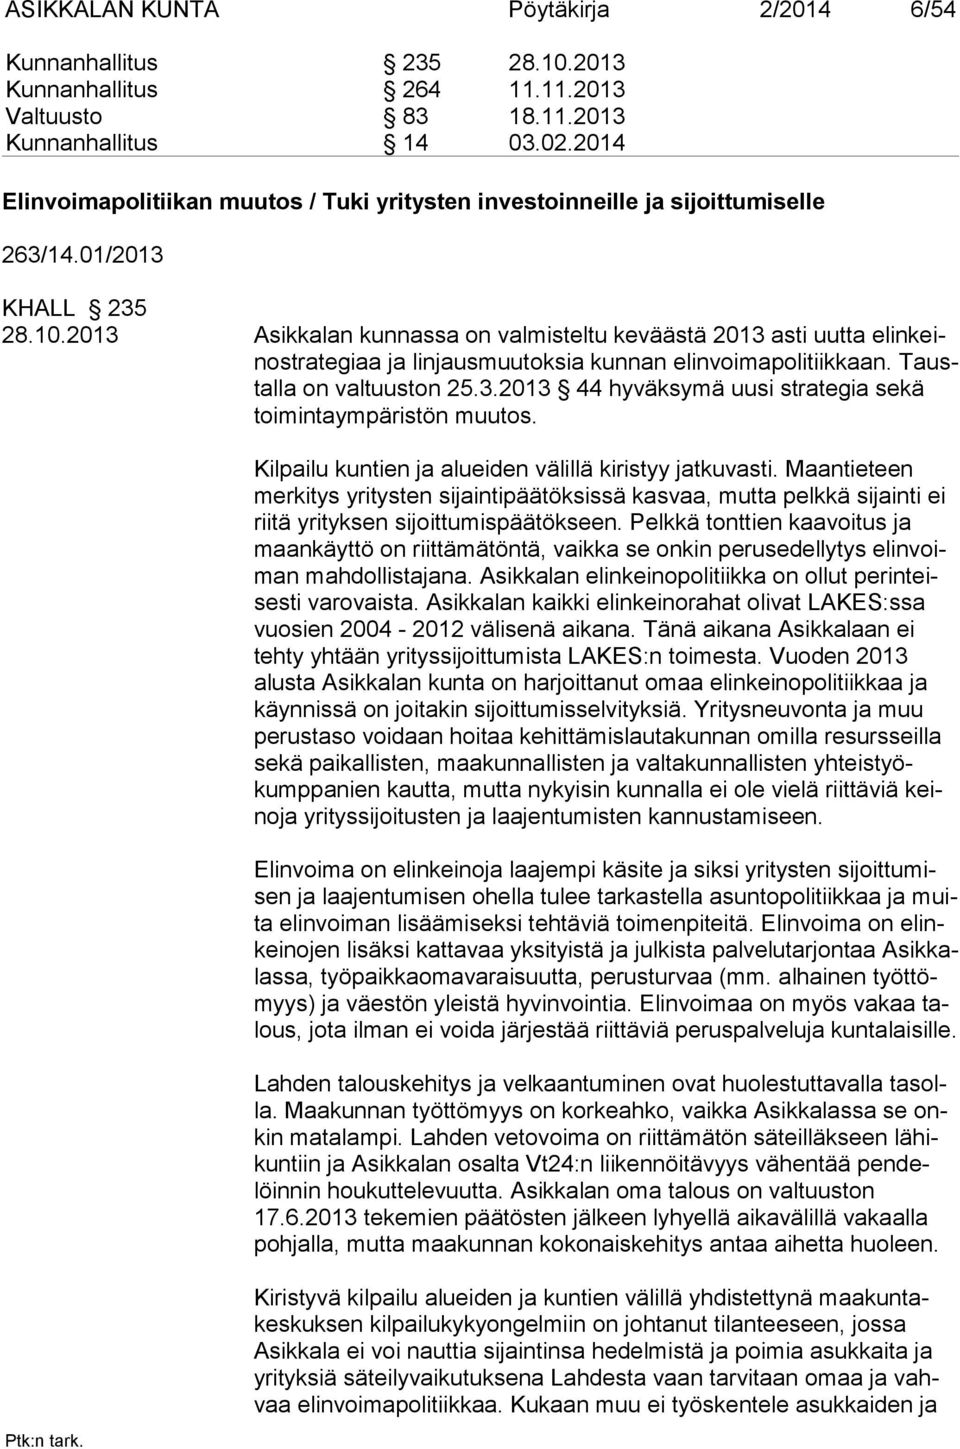 2013 Asikkalan kunnassa on valmisteltu keväästä 2013 asti uutta elinkeinostrategiaa ja lin jaus muutoksia kunnan elinvoimapolitiikkaan. Taustalla on valtuus ton 25.3.2013 44 hyväksymä uusi strategia sekä toimintaympäris tön muutos.